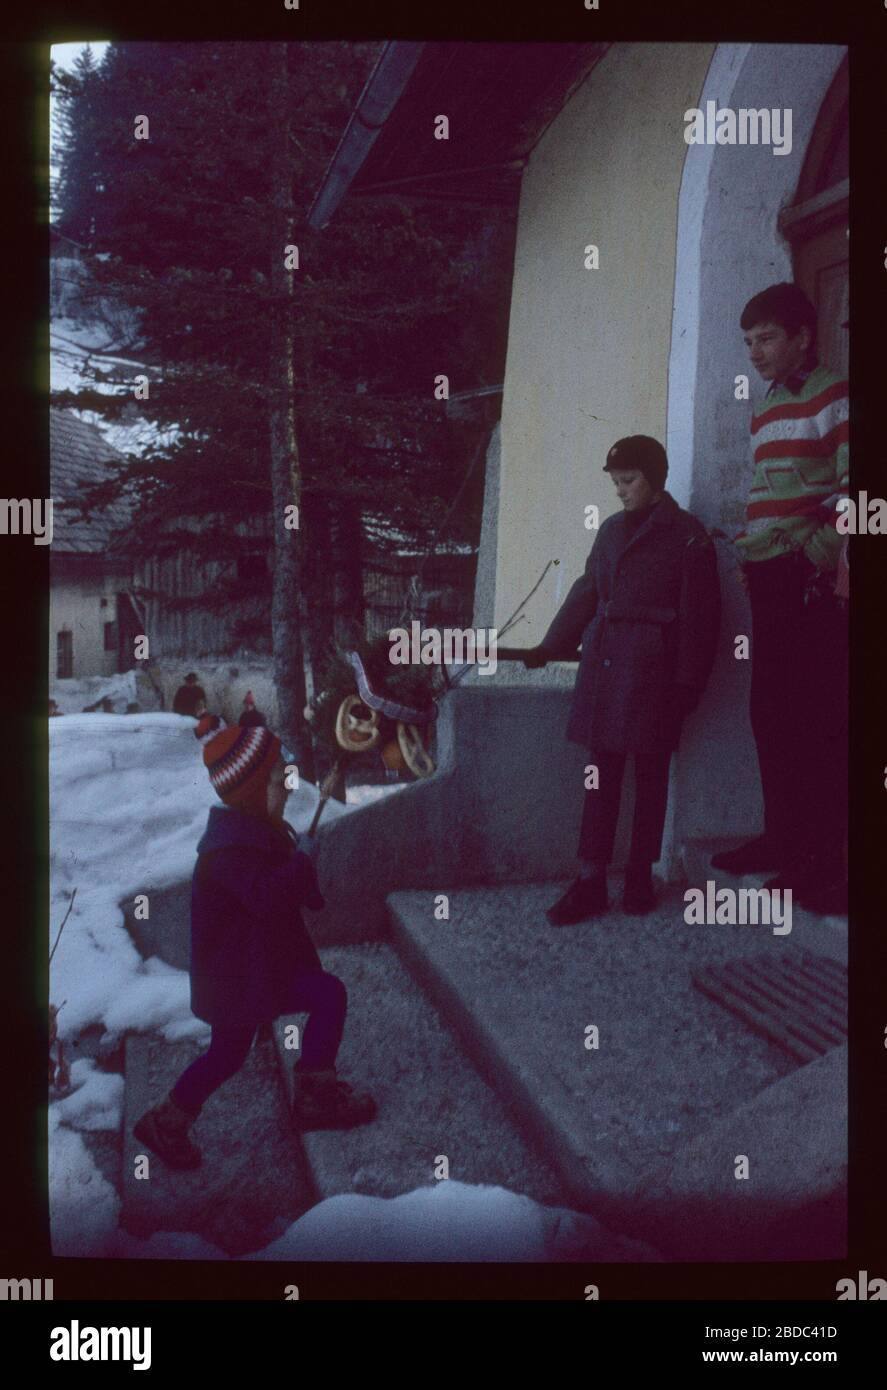 reguleren temperen verkouden worden 30 march 1995 hi-res stock photography and images - Alamy